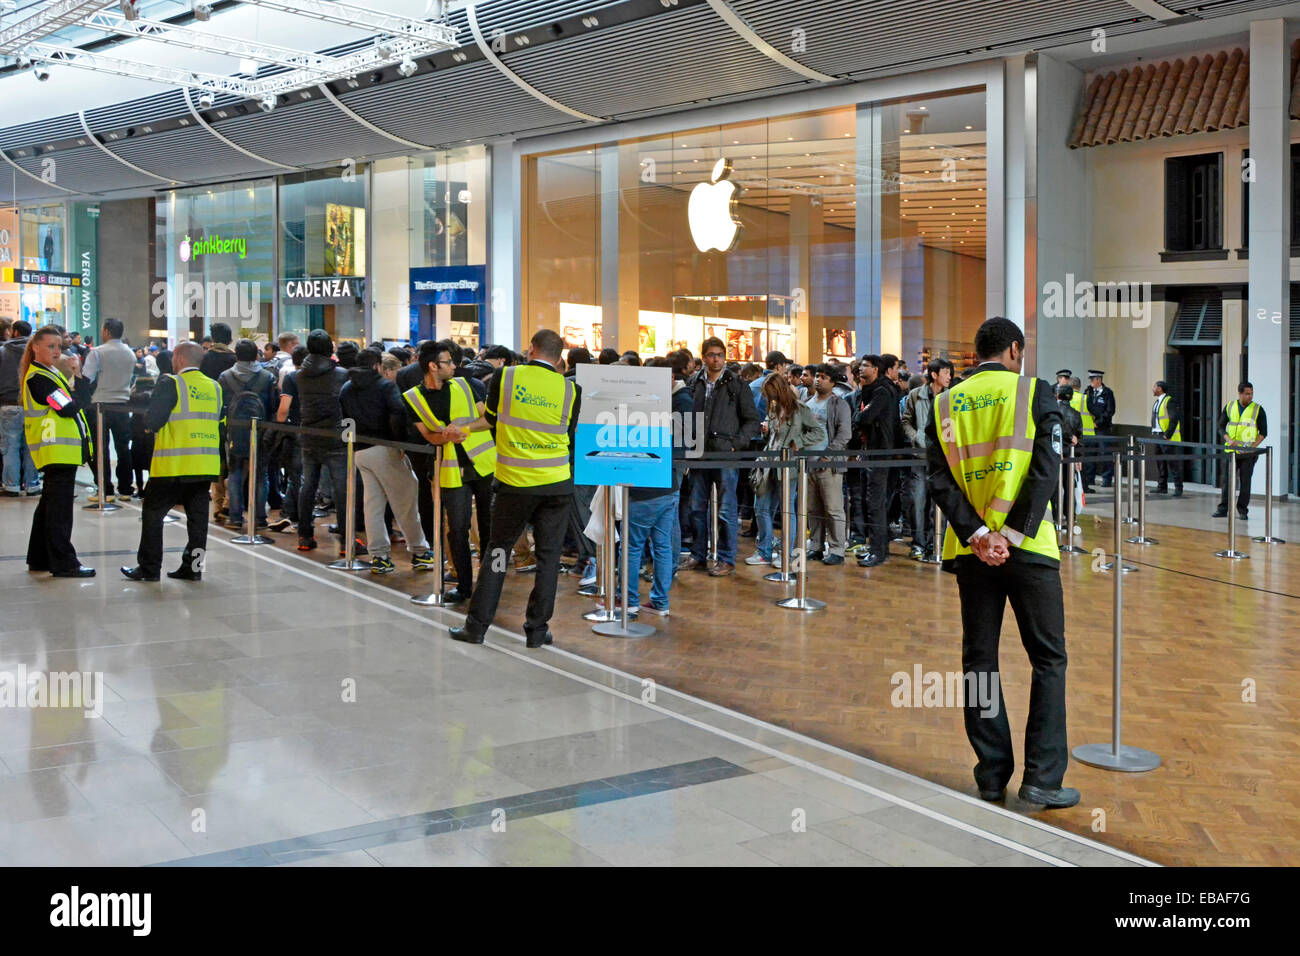 Le personnel de sécurité supervise les foules de personnes en dehors des activités Apple Intérieur du magasin centre commercial Westfield Mall Stratford Newham East London Banque D'Images